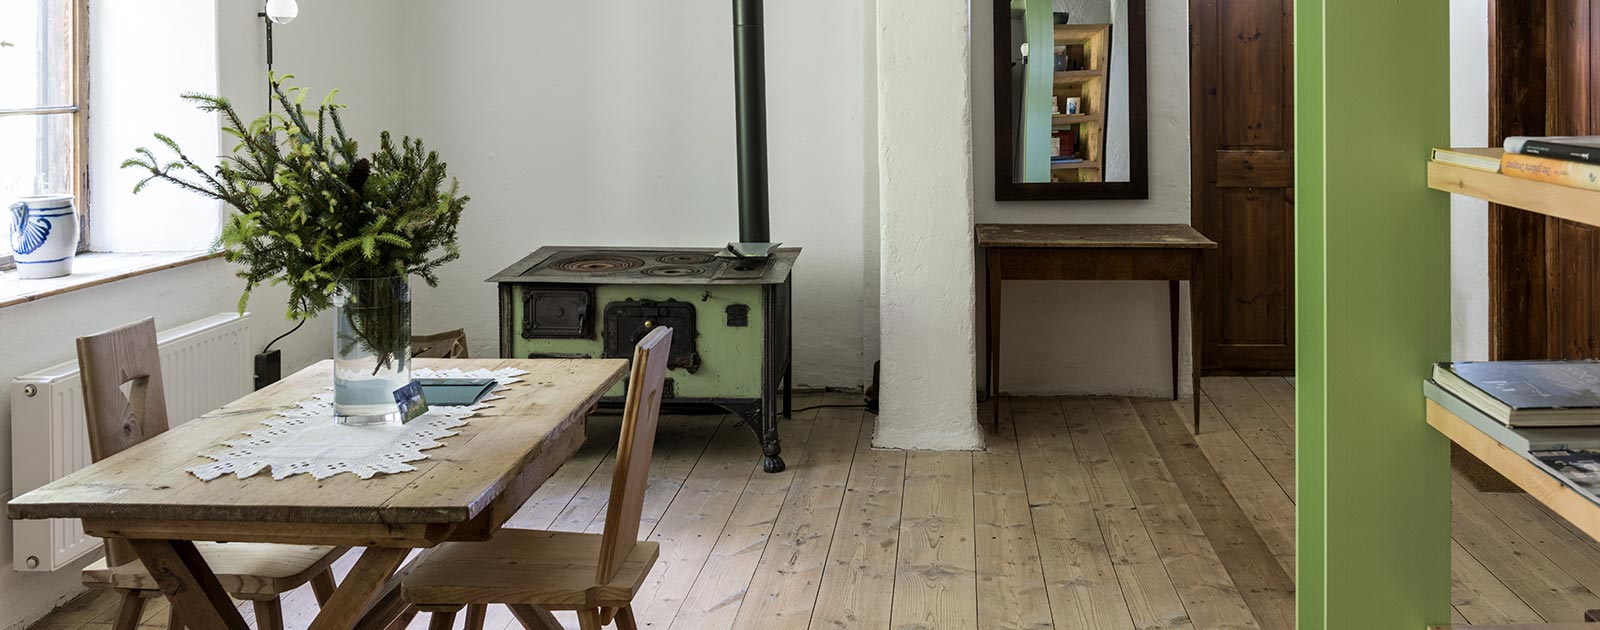 il tavolo da pranzo e un forno a legna antico in una camera della casa Settari dell'hotel Briol a Barbiano